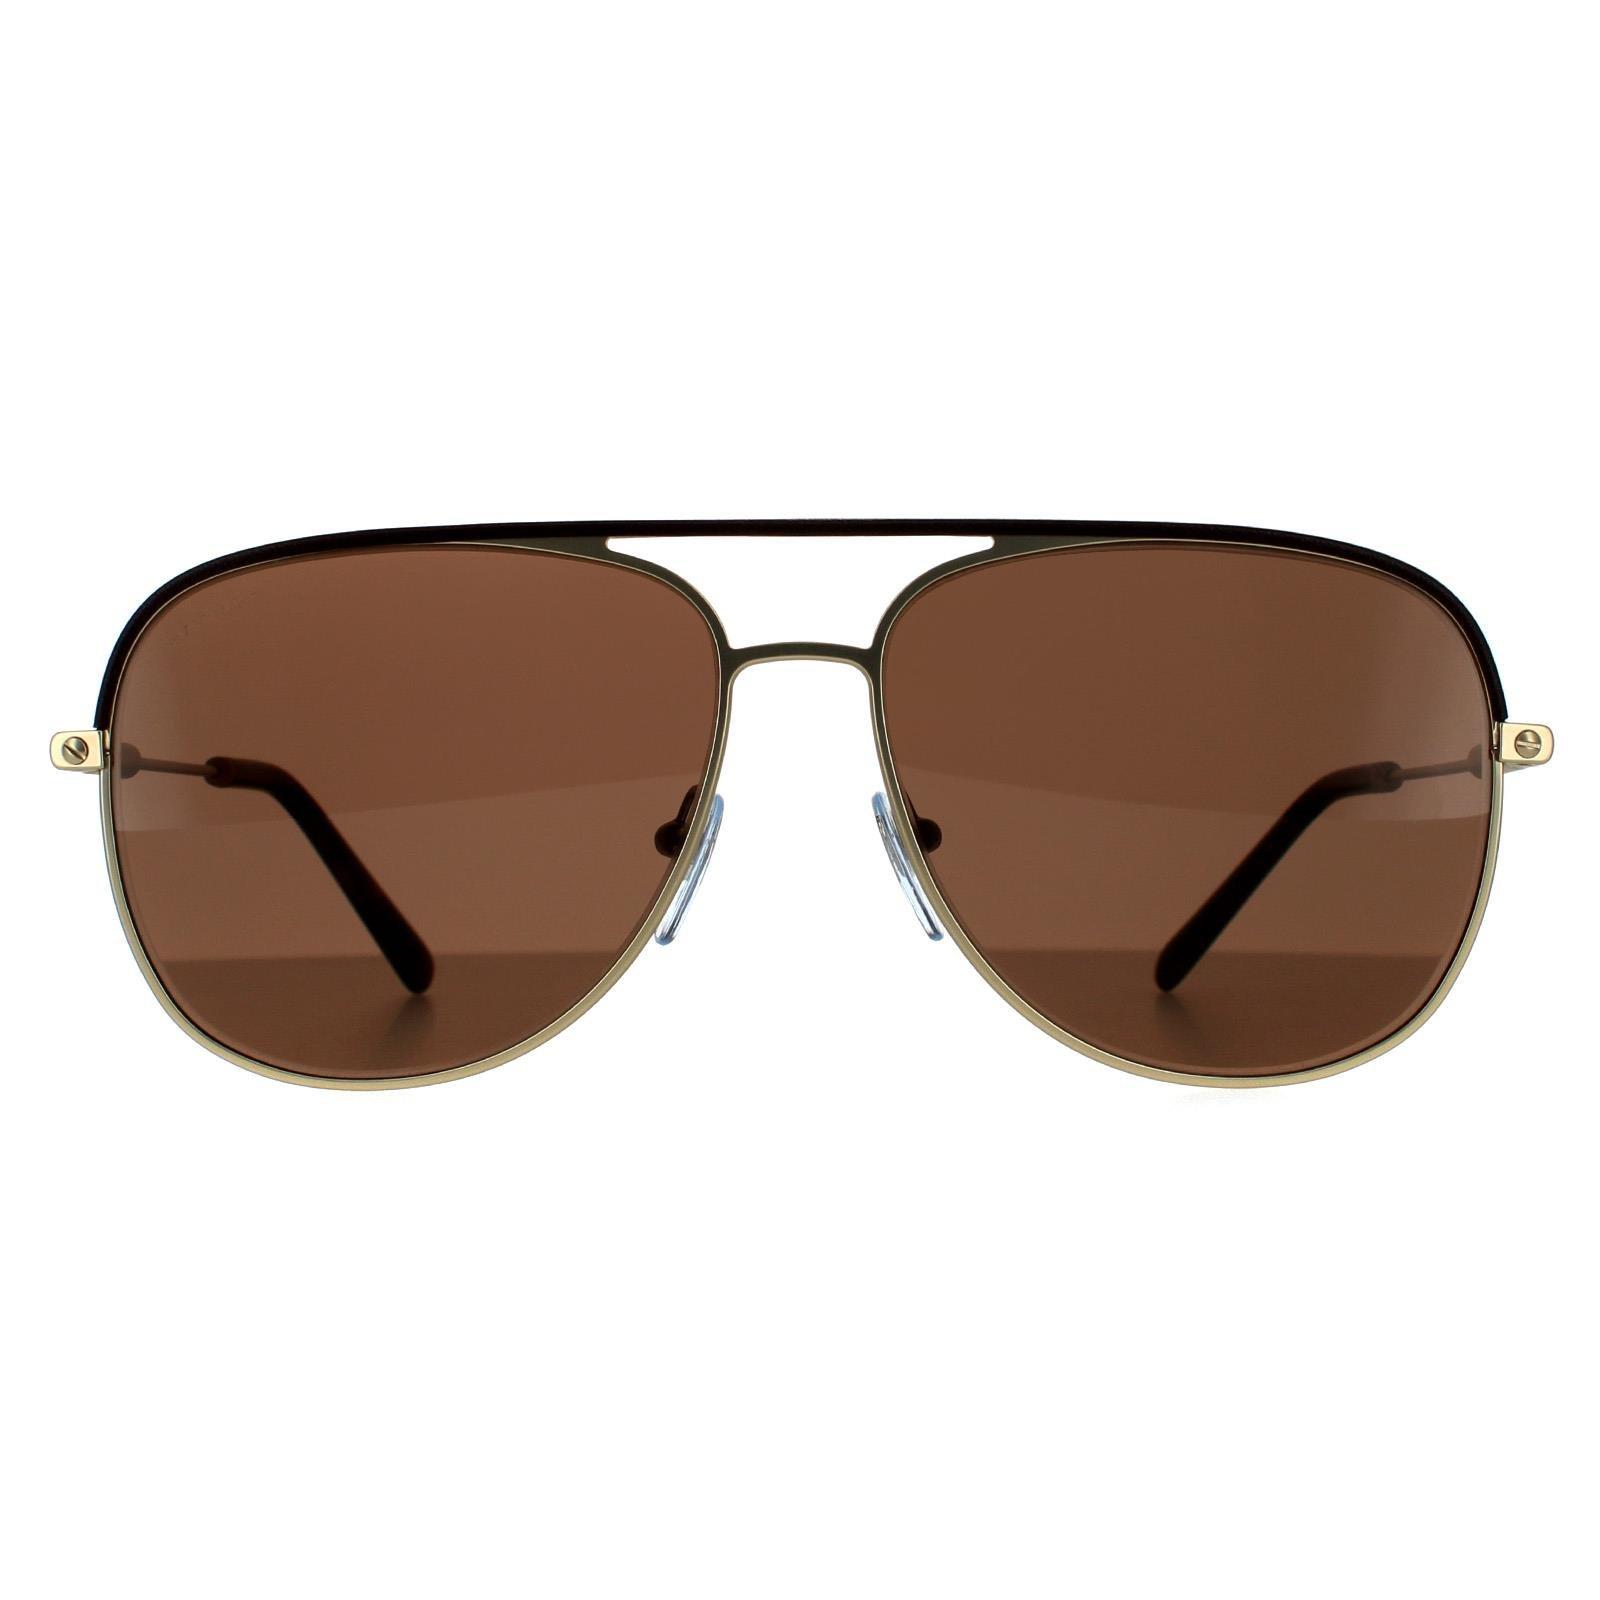 Солнцезащитные очки-авиаторы коричневого цвета и матового бледно-золотистого цвета Bvlgari, золото цена и фото